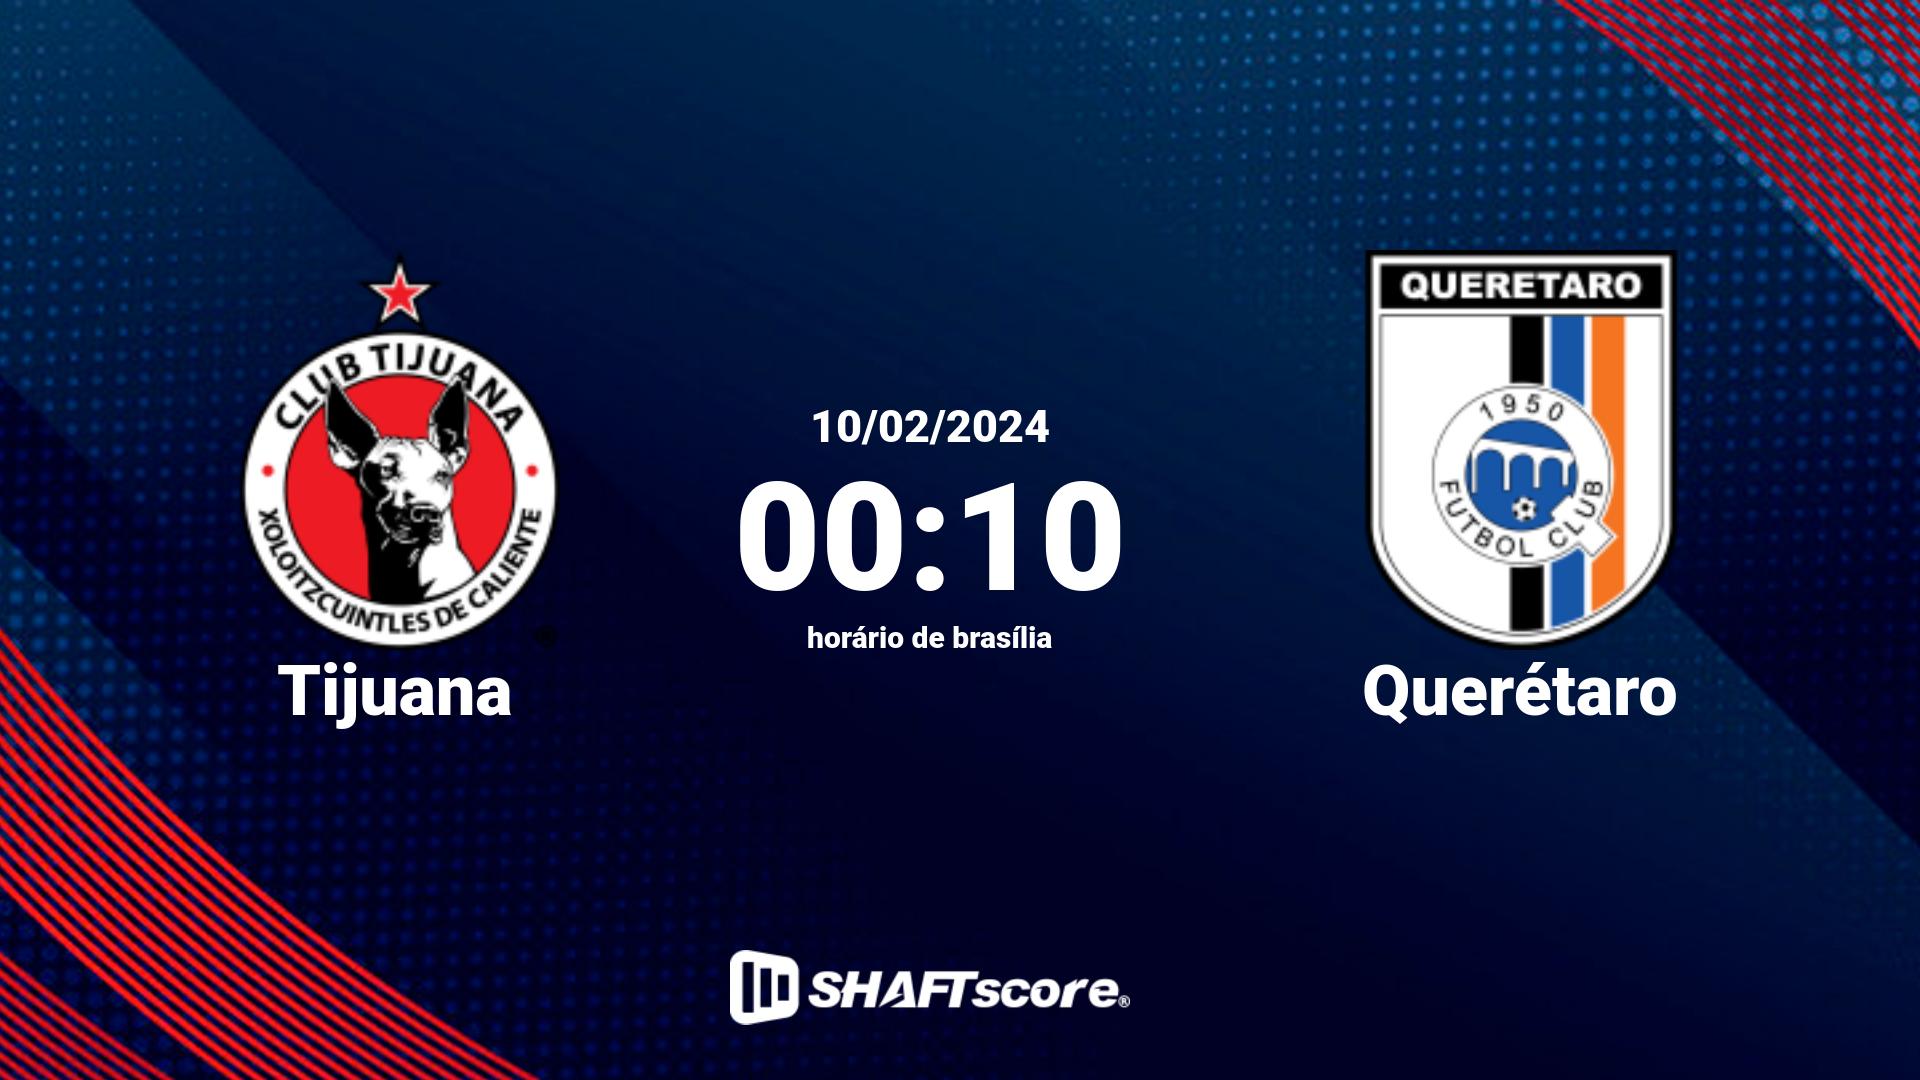 Estatísticas do jogo Tijuana vs Querétaro 10.02 00:10